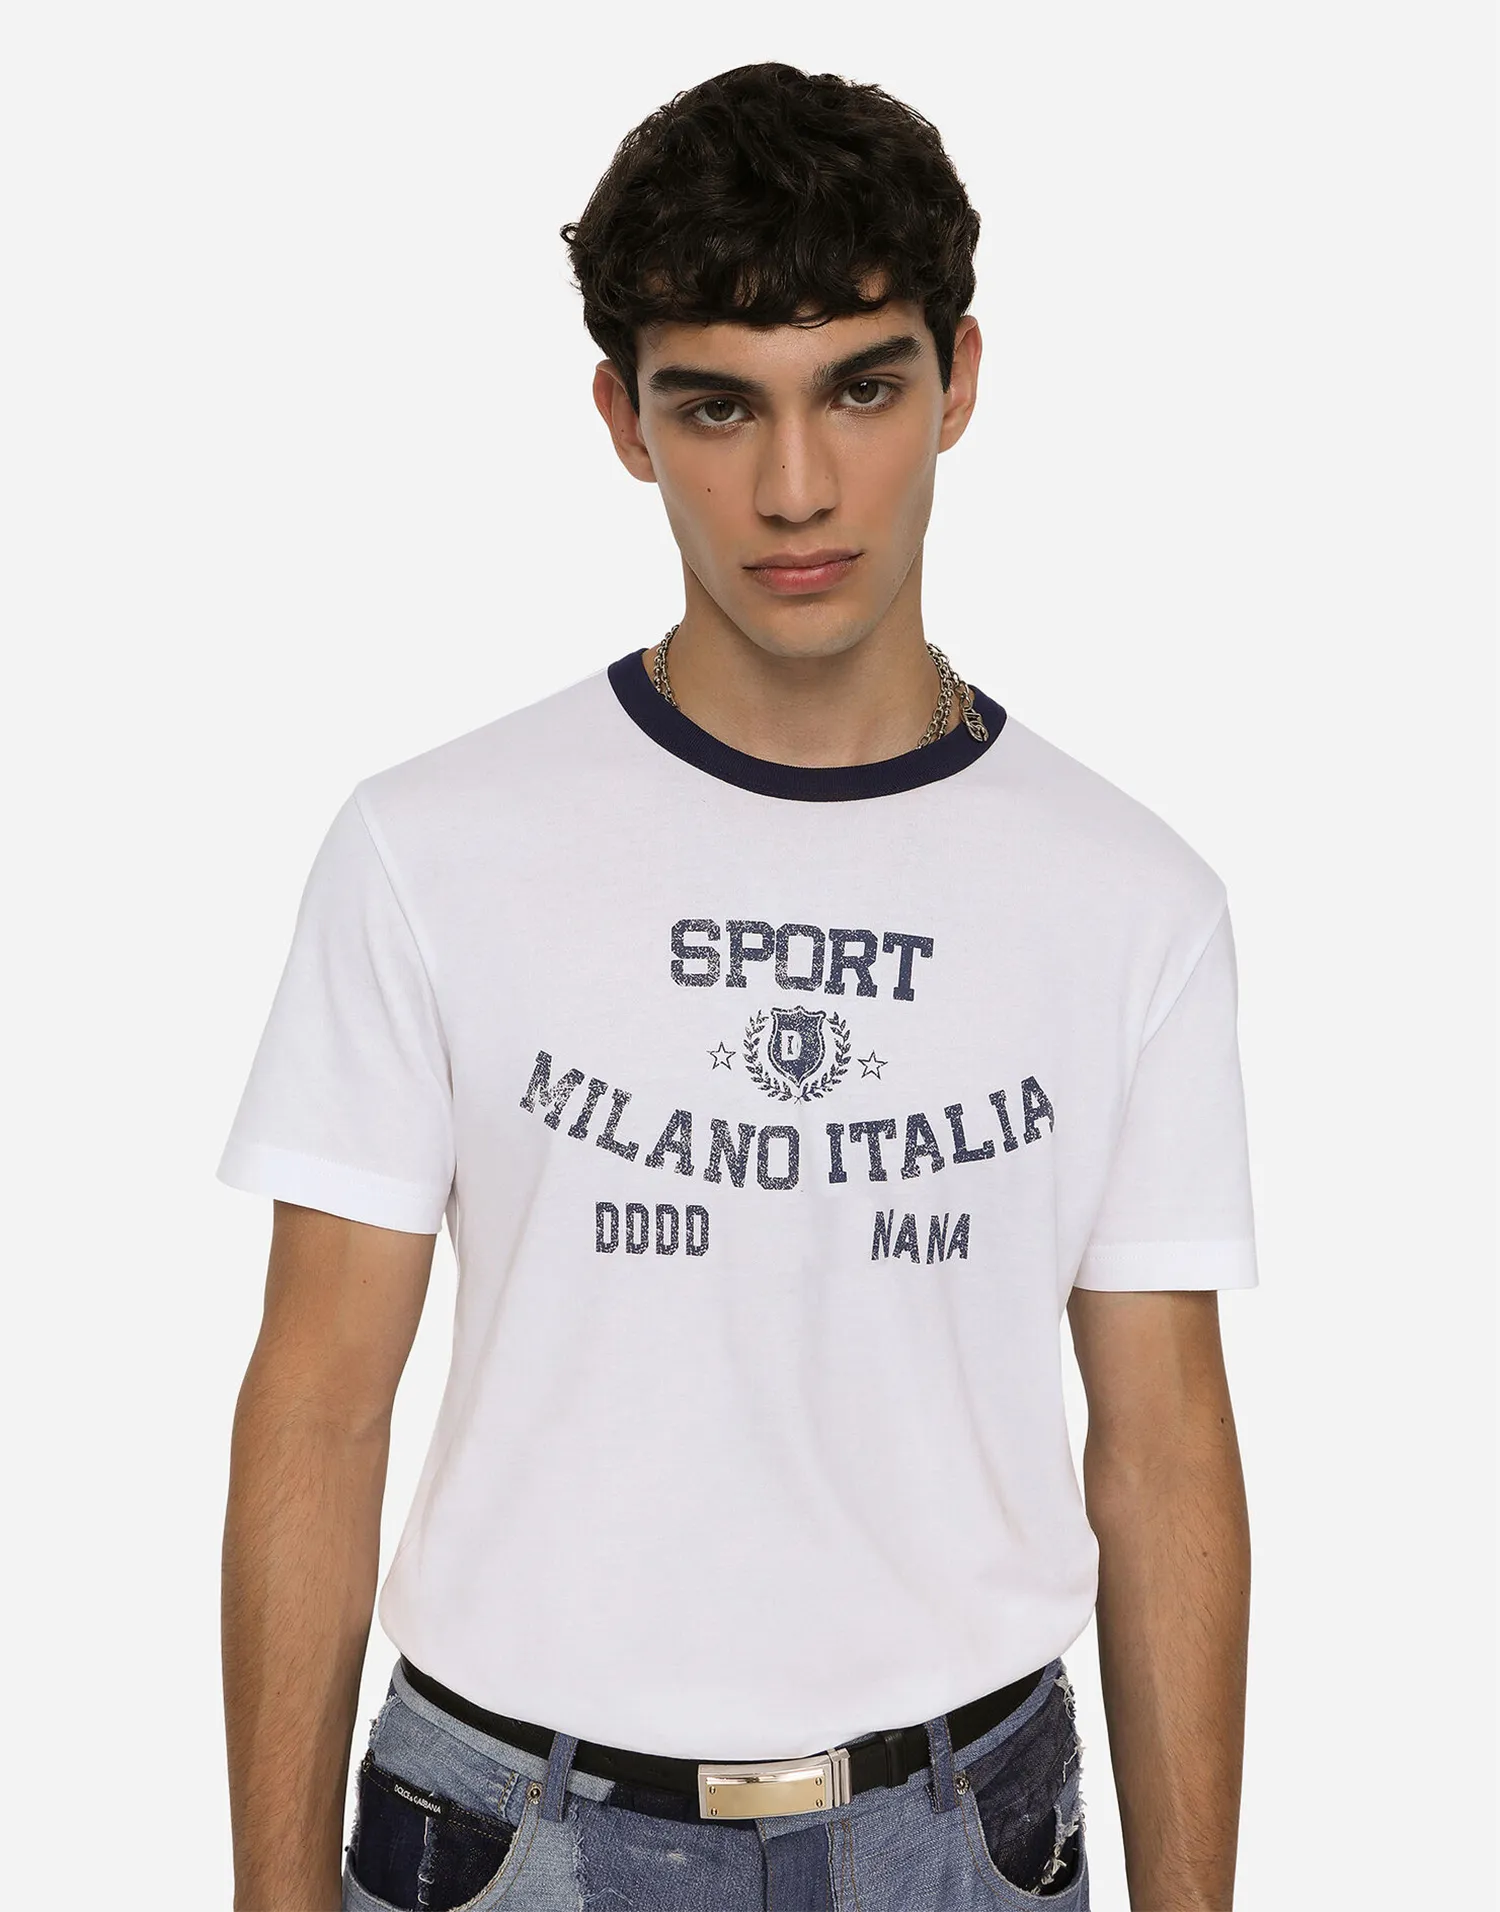 DSQ PHANTOM TURTLE Herren Designer T-Shirt Italienisches Milan Fashion Logo Print T-Shirt Sommer Schwarz Weiß T-Shirt Hip Hop Streetwear 100% Baumwolle Tops Plus Größe 51478